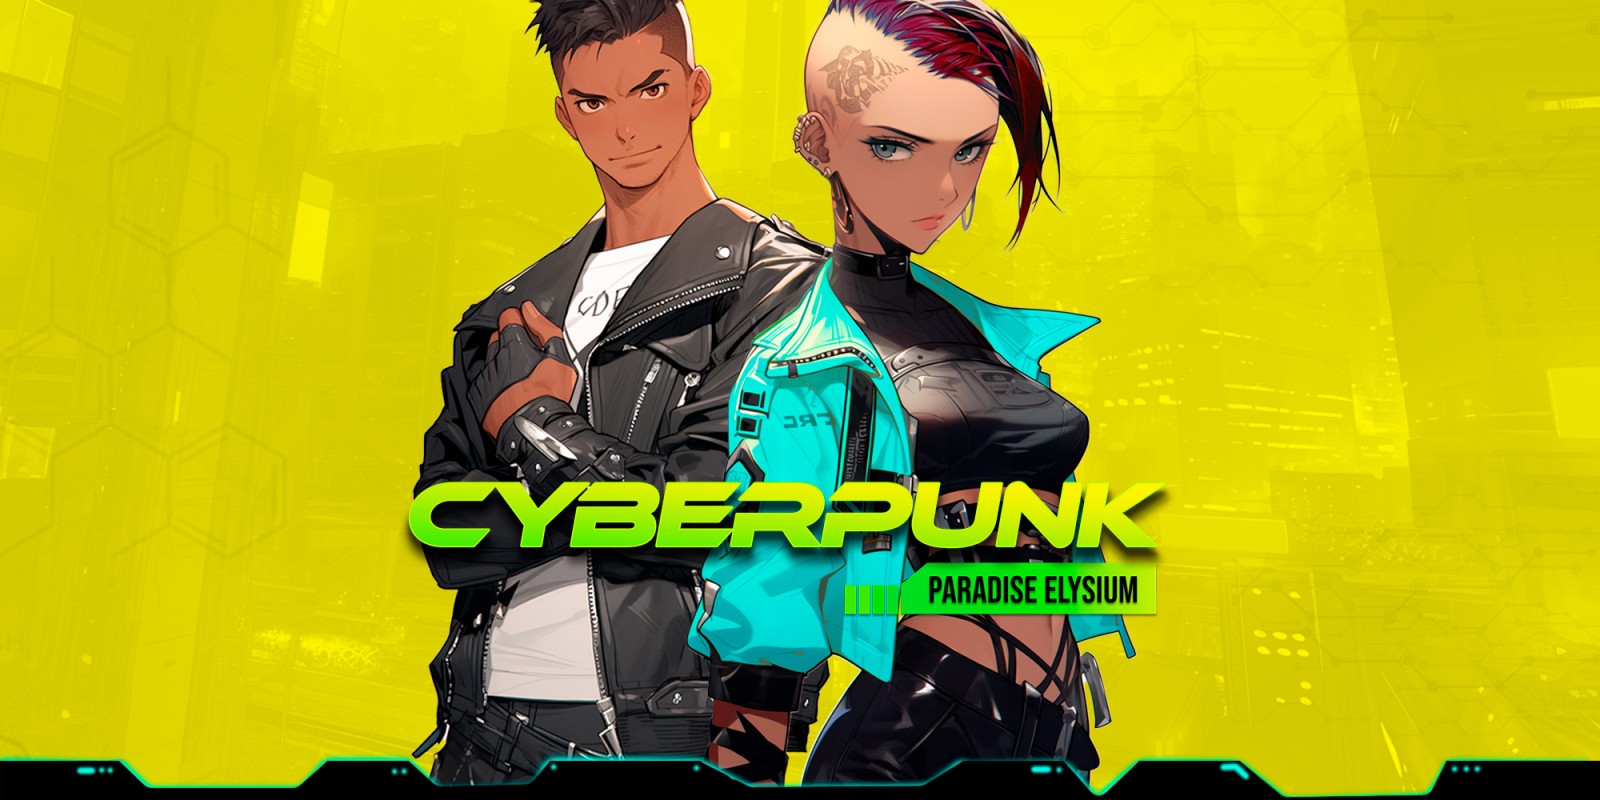 Cyberpunk Paradise Elysium: The Visual Novel